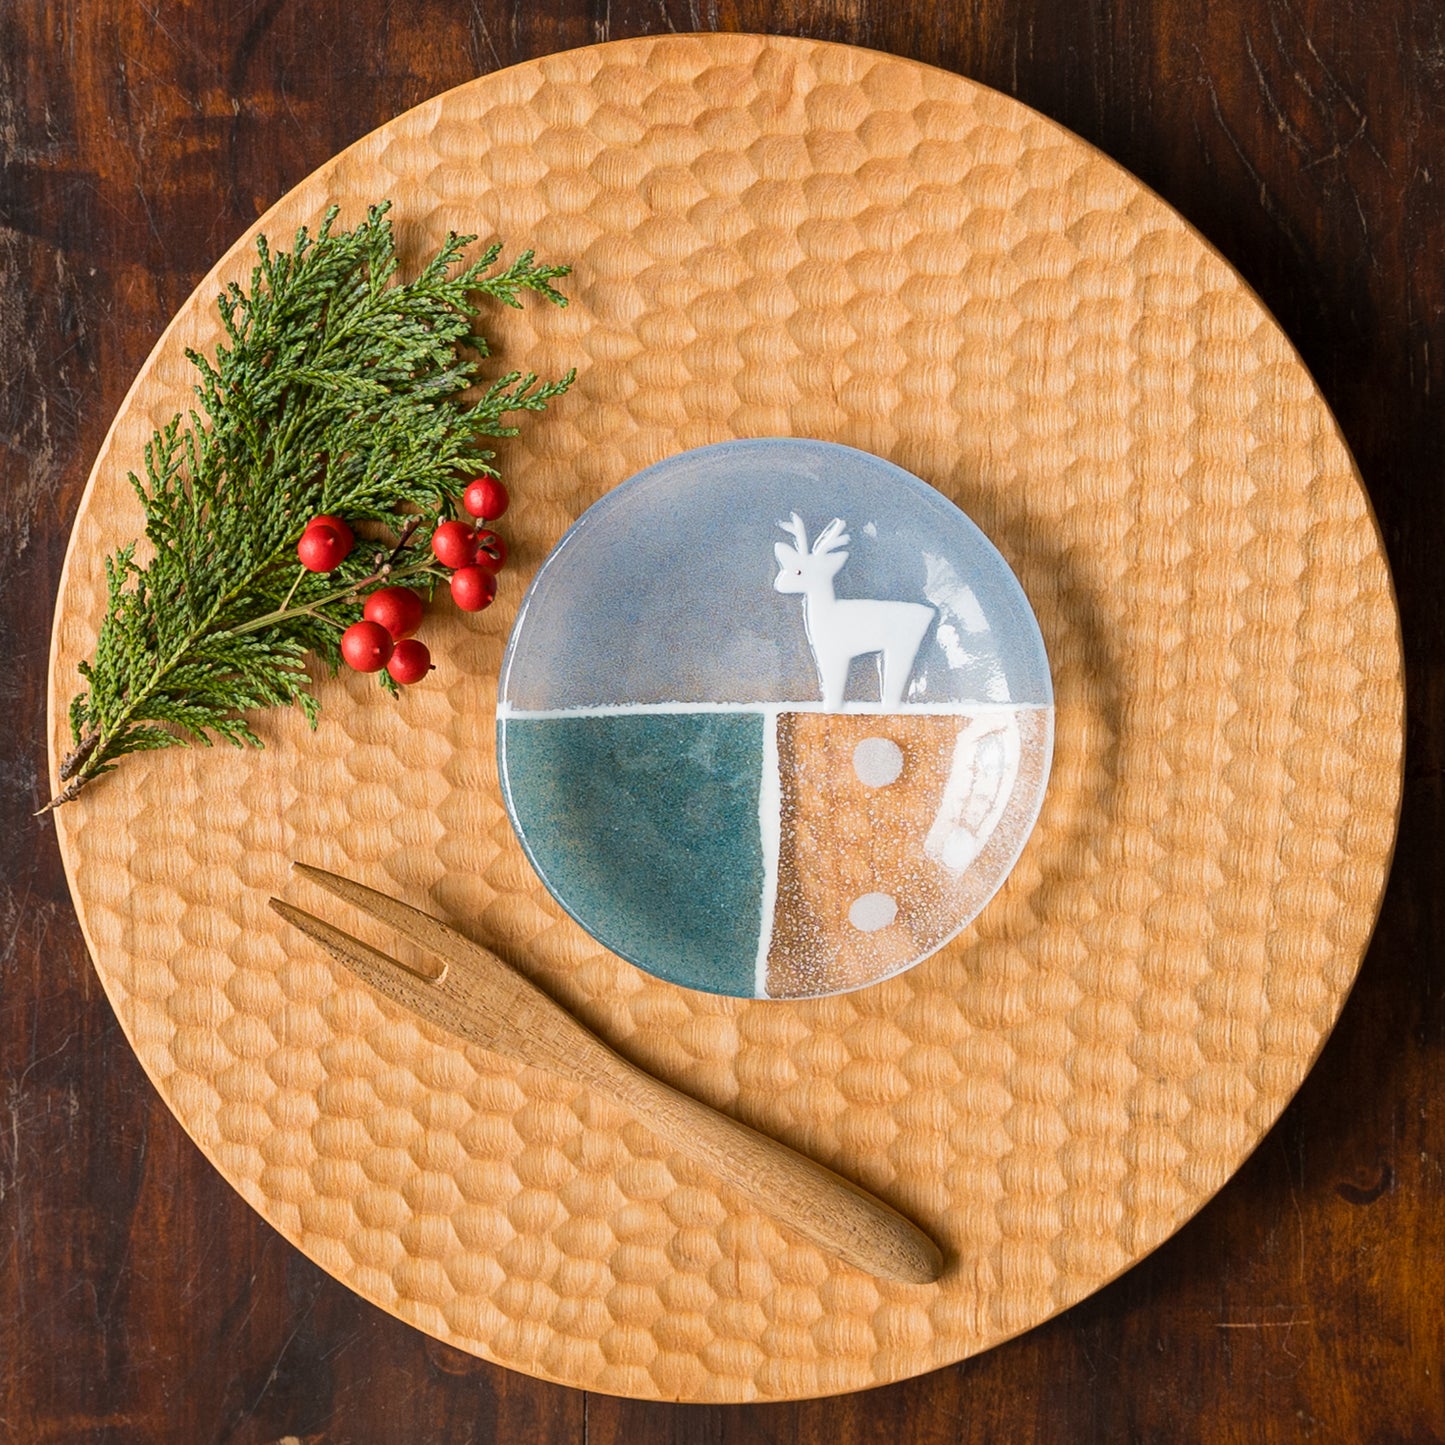 クリスマスの食卓を素敵に彩ってくれる石塚悠さんのトナカイの豆皿